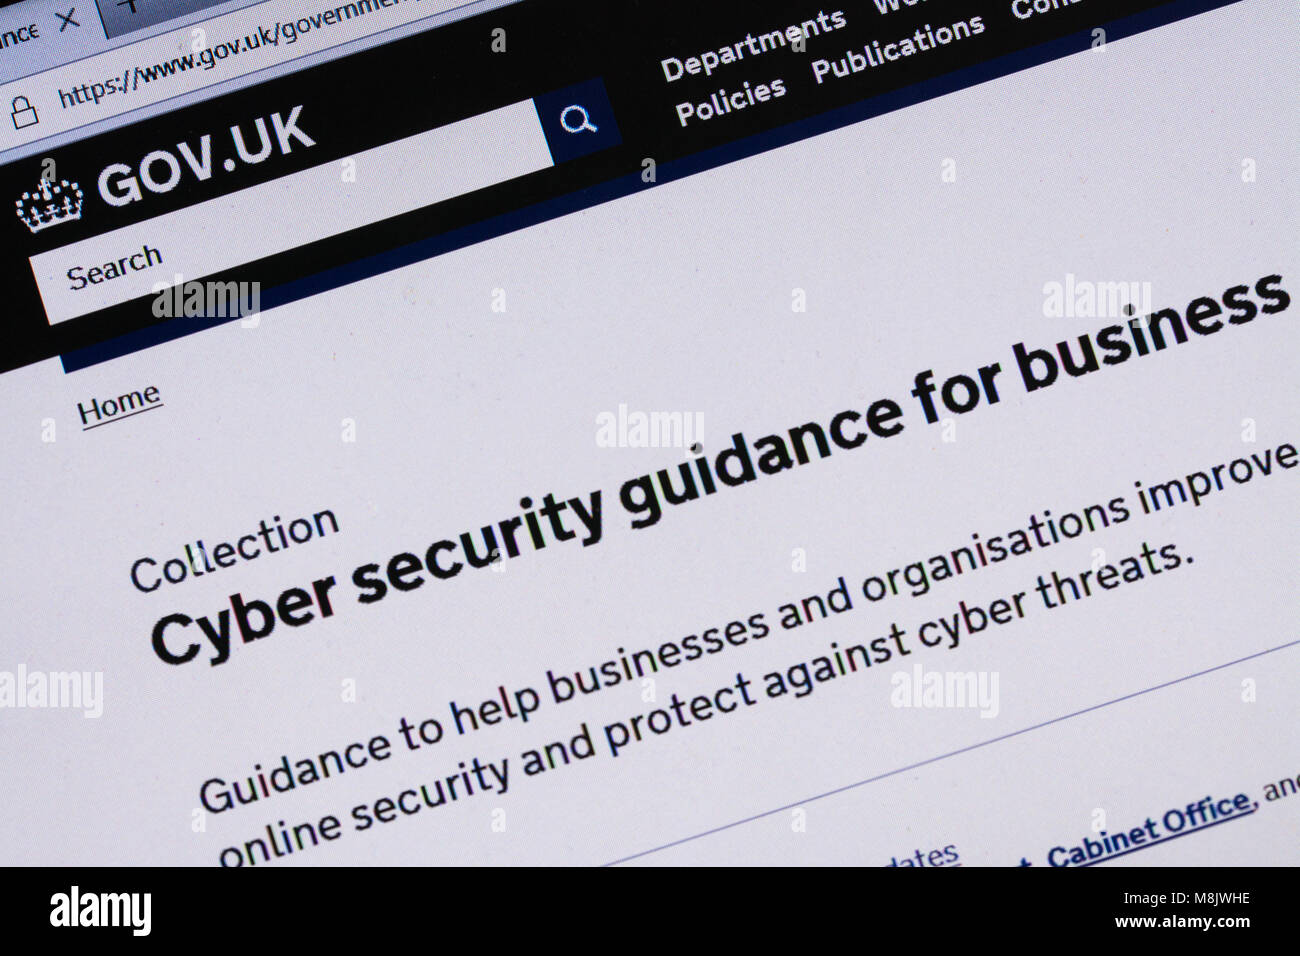 Capture d'écran de l'ordinateur affichant les informations à propos de la cybersécurité sur gov.uk website Banque D'Images